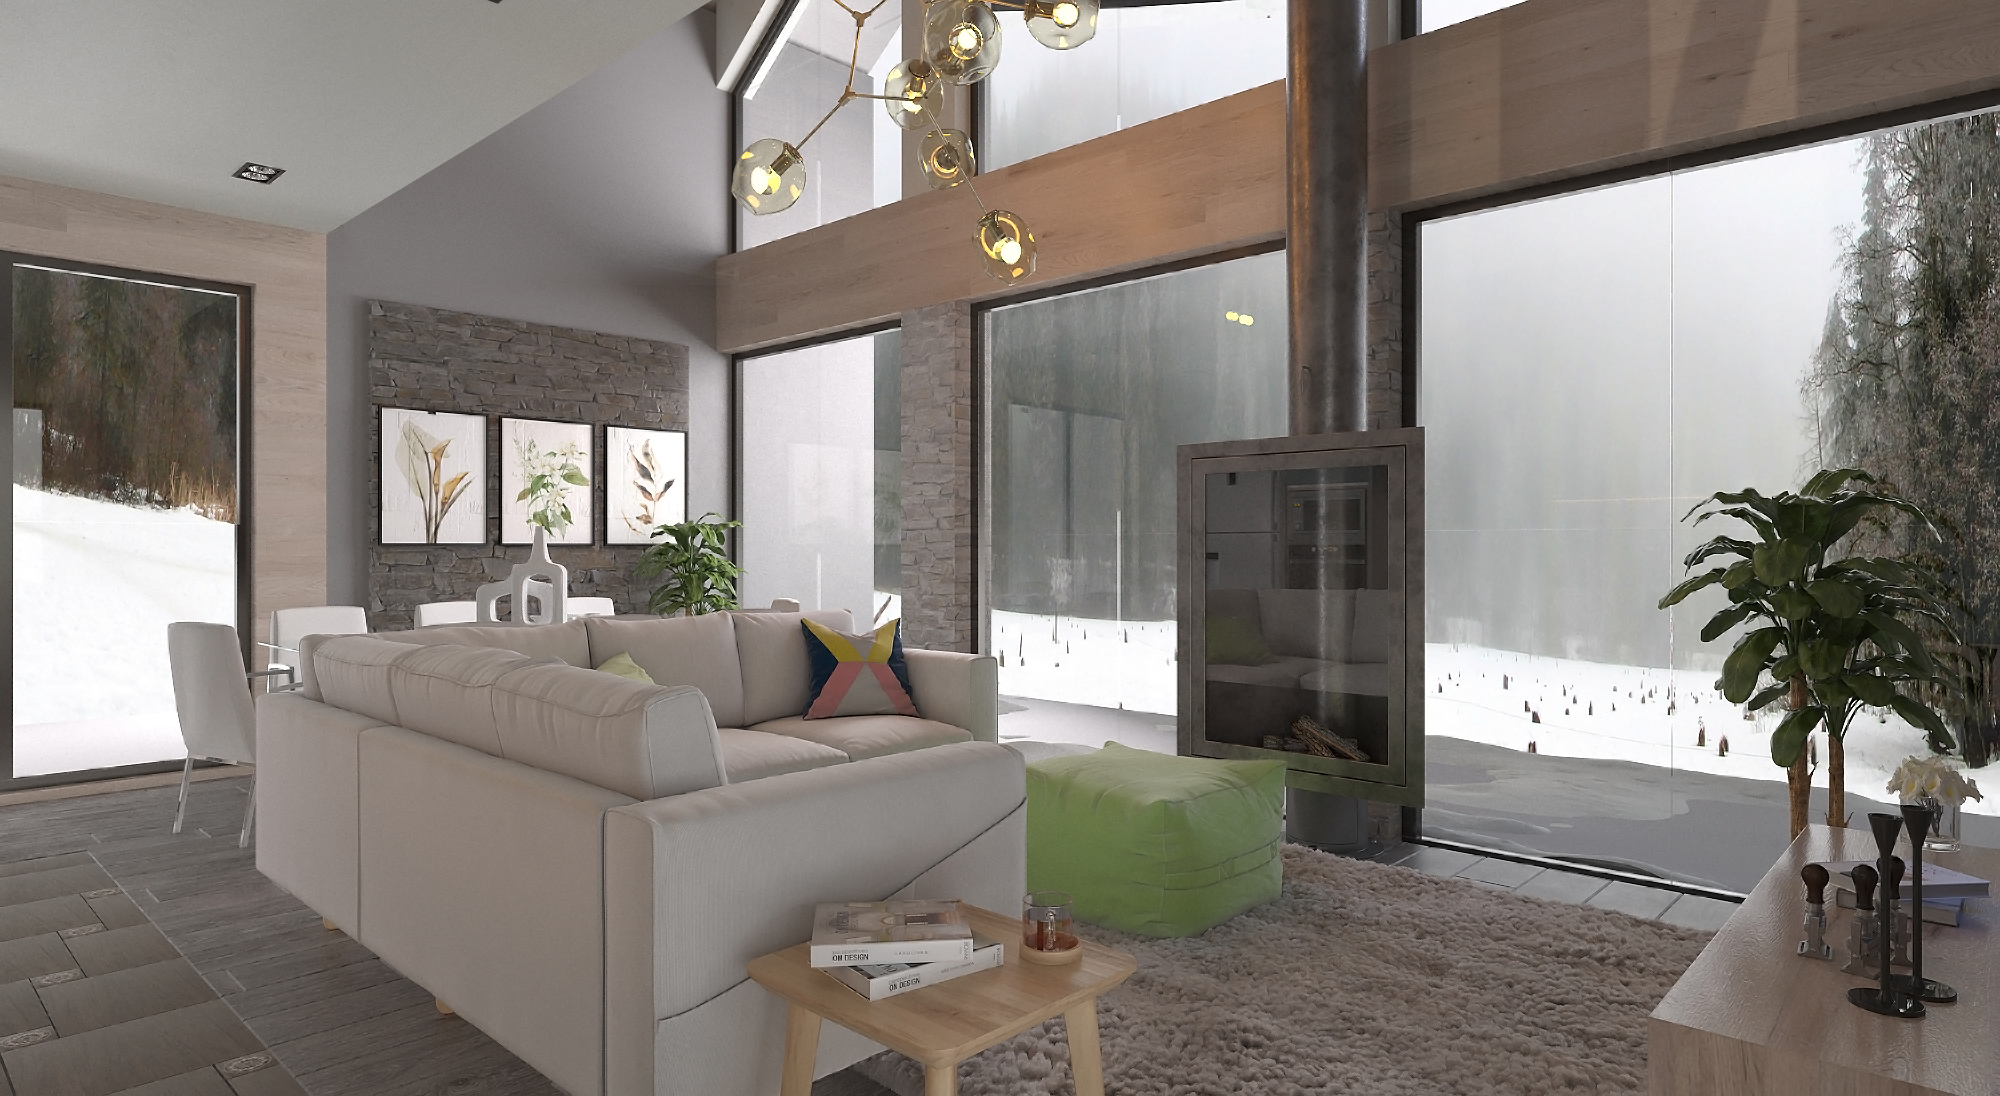 Пример чистовой внутренней отделки дома, Дизайн Фулл хаус. Гостиная + кухня 3 вид.